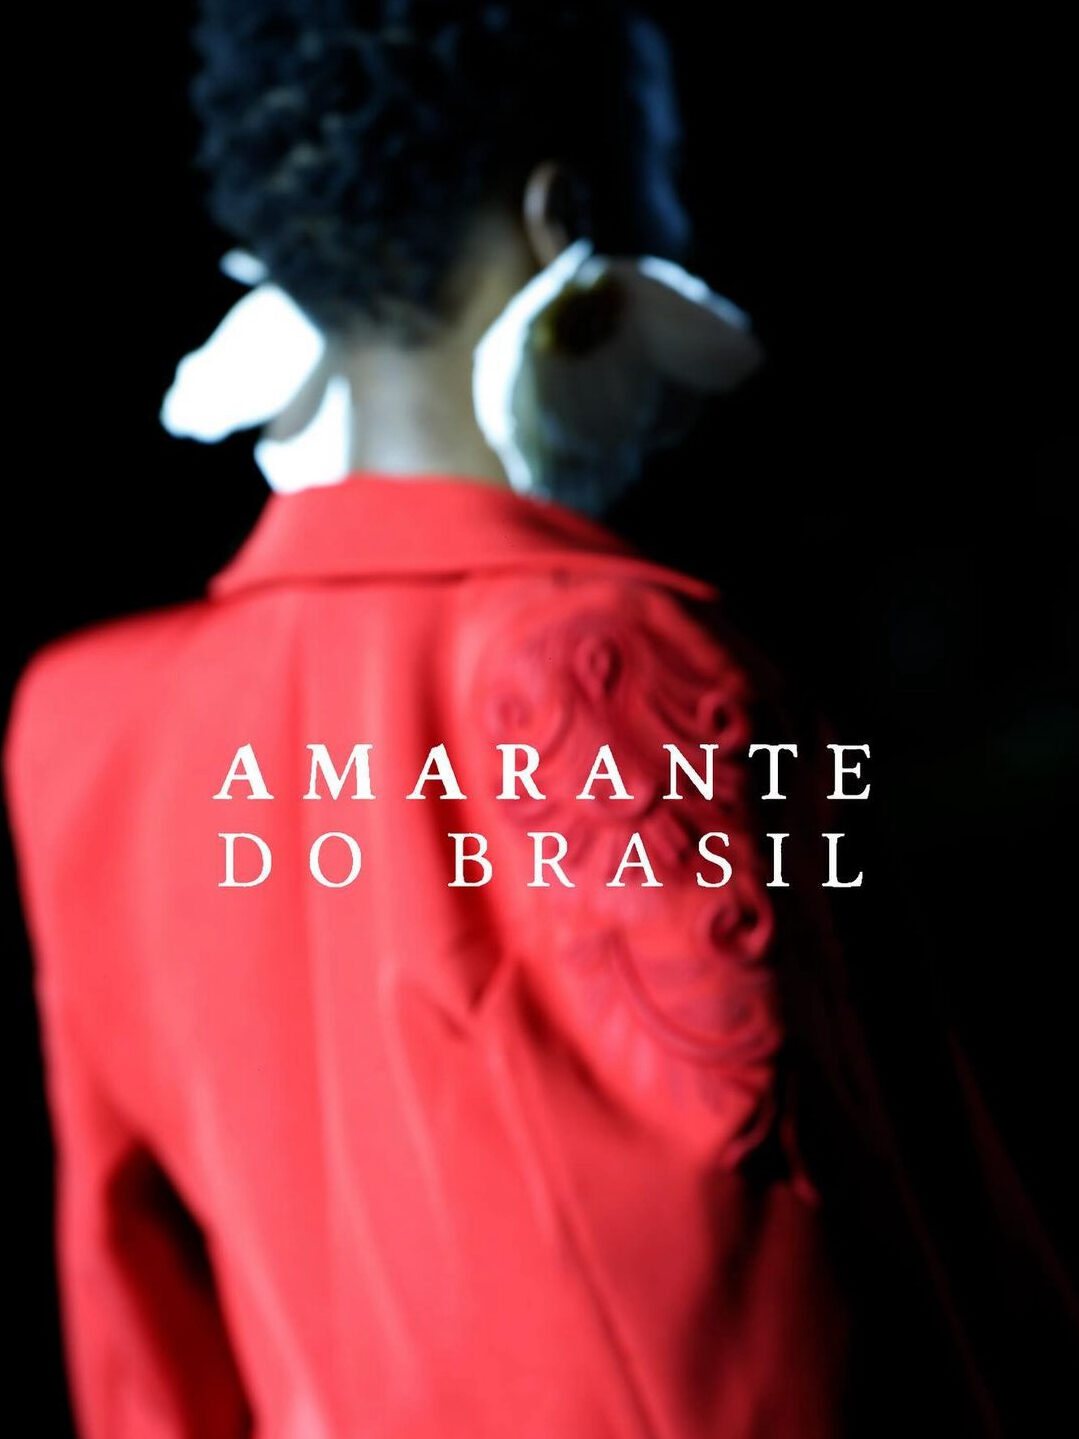 Fotografia de moda de modelo vestindo um casaco vermelho e brincos de flor grandes em cor branca. Por cima da foto, há a aplicação da frase "Amarante do Brasil".